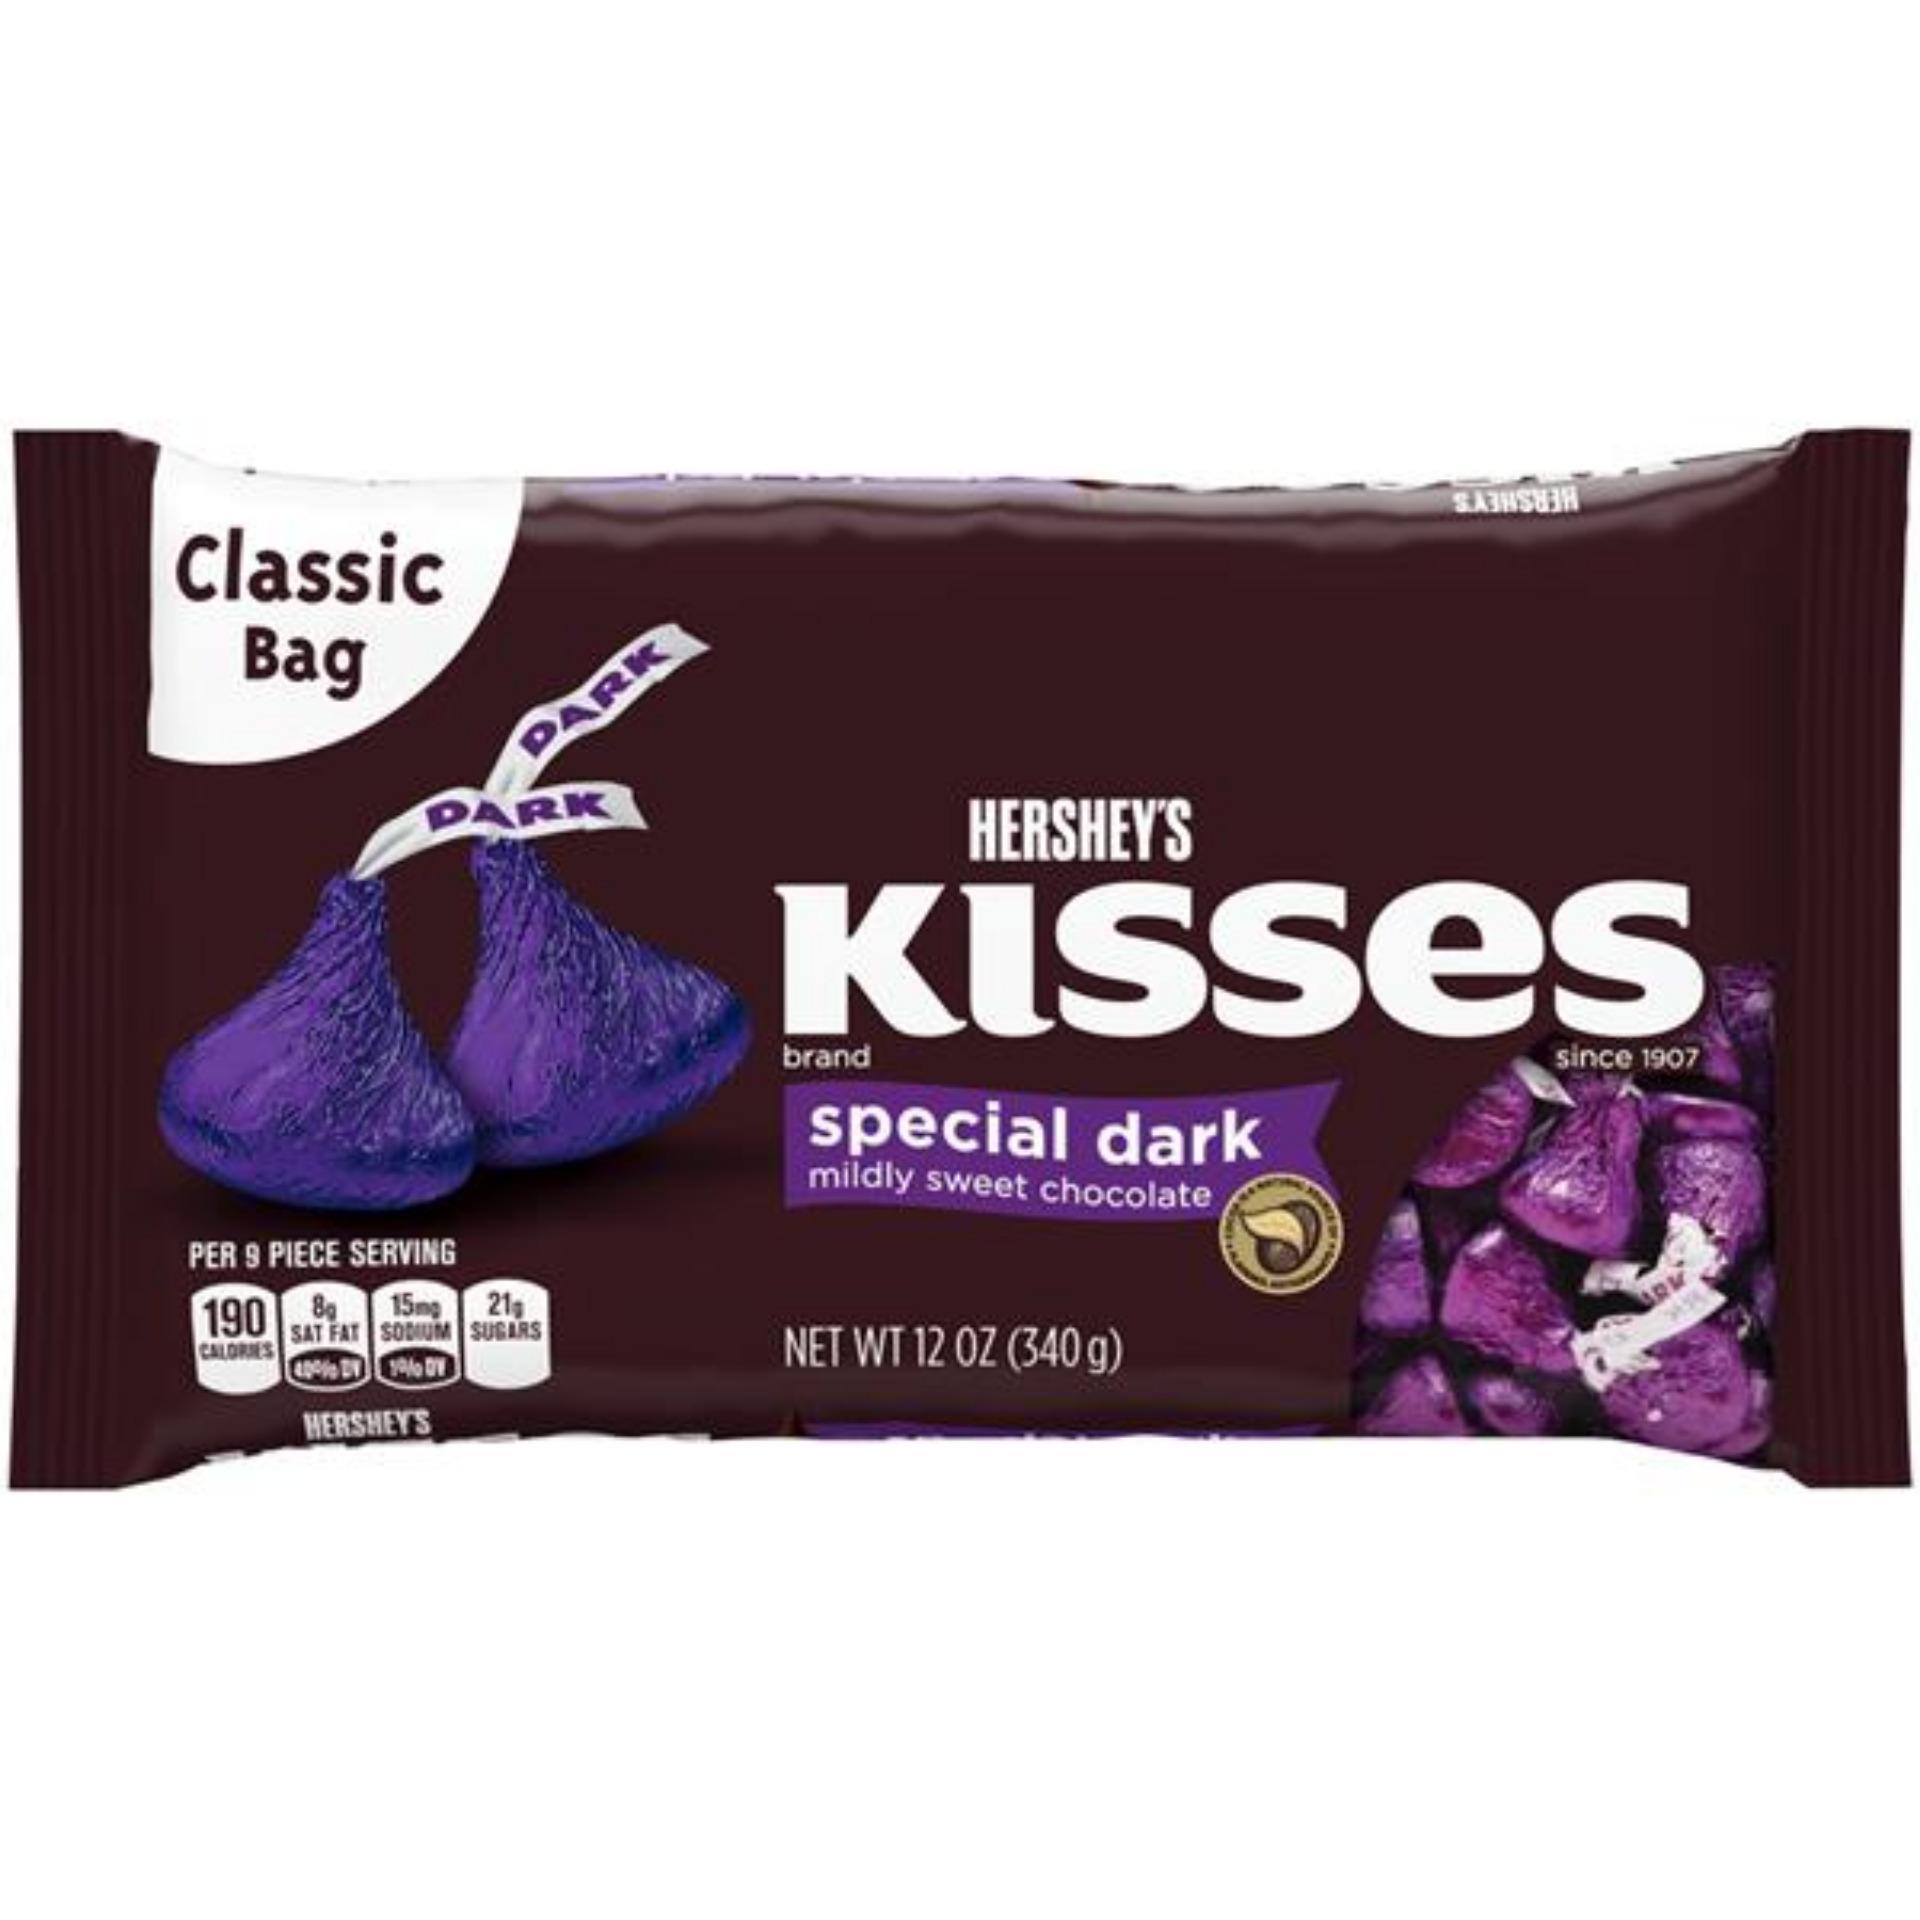 Chocolate Hershey's Kiss ú tím đắng